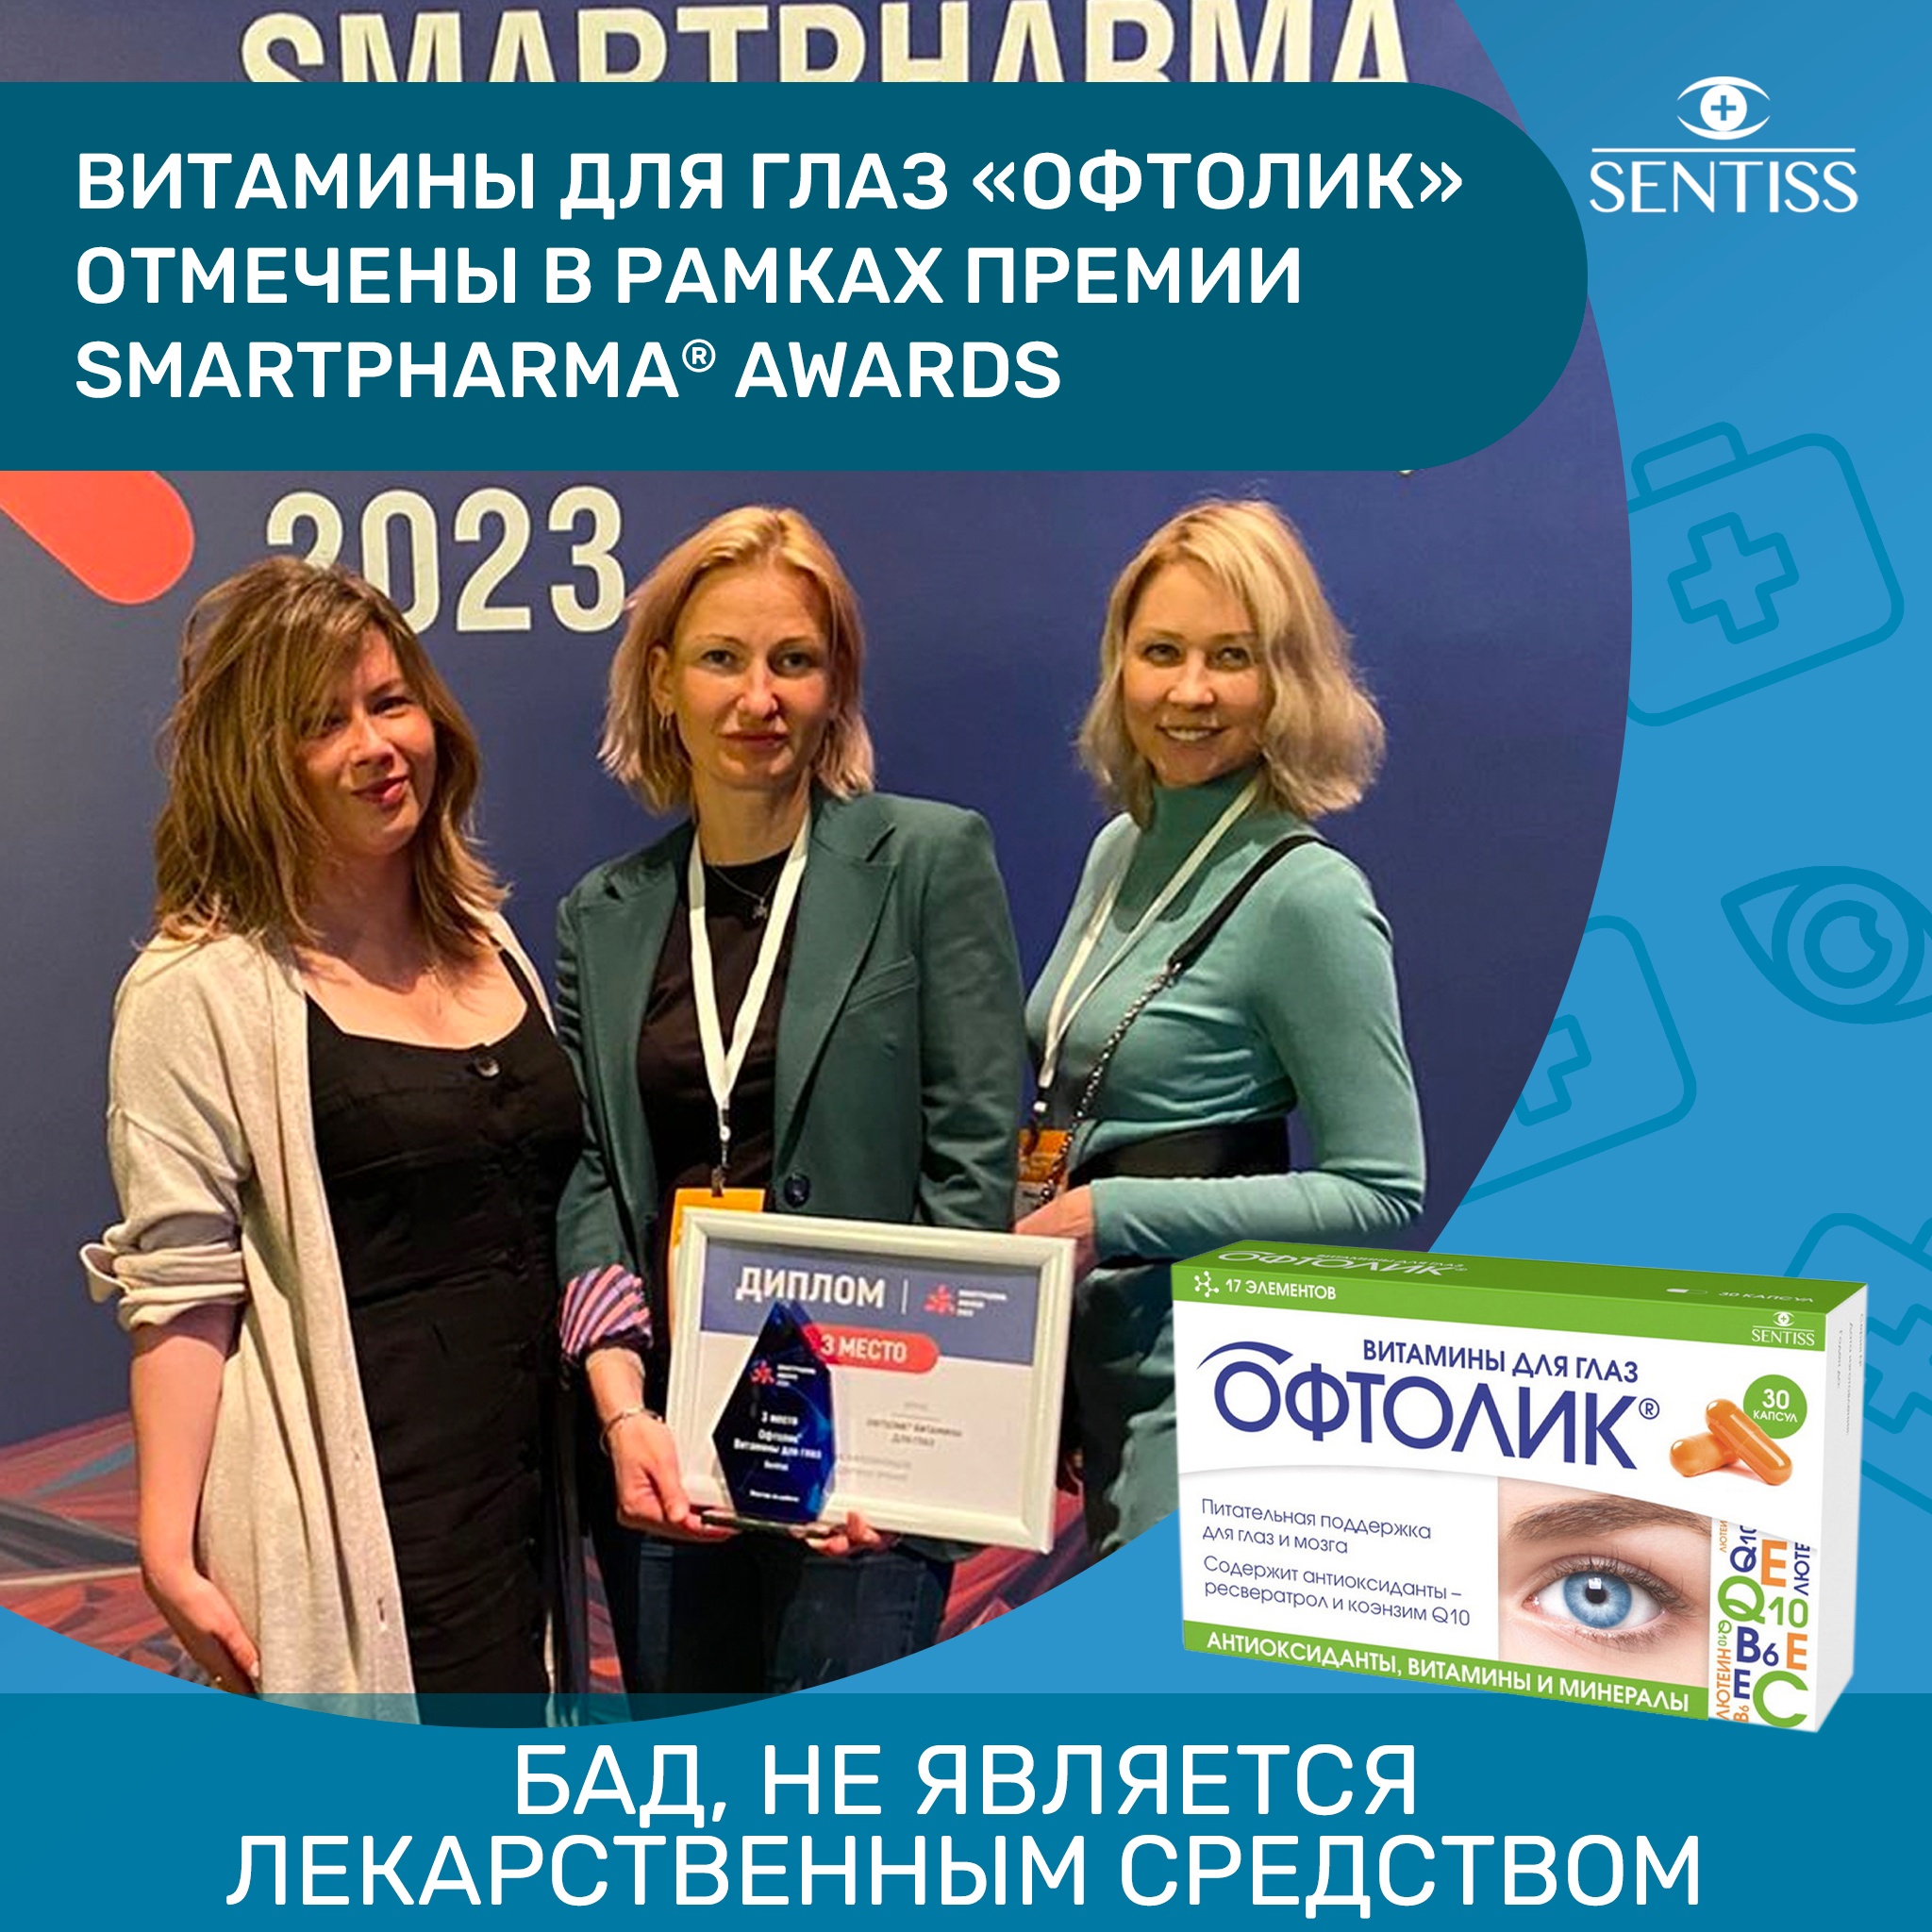 Награждение лауреатов премии Smartpharma® Awards